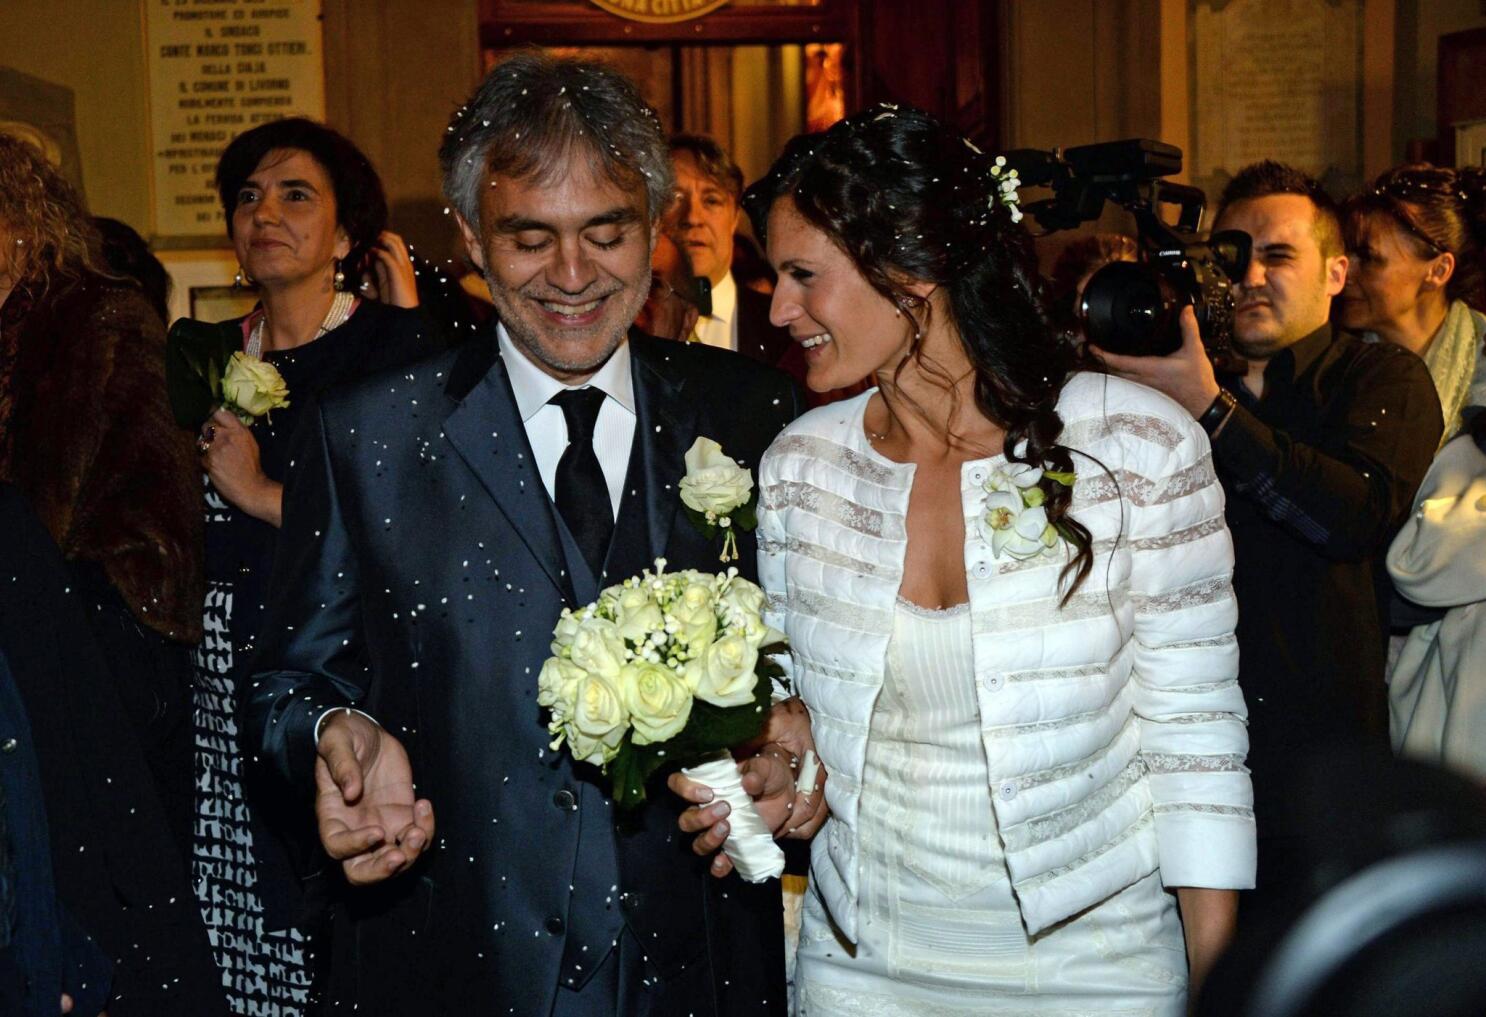 Singer Andrea Bocelli Weds Longtime Girlfriend - TV Guide